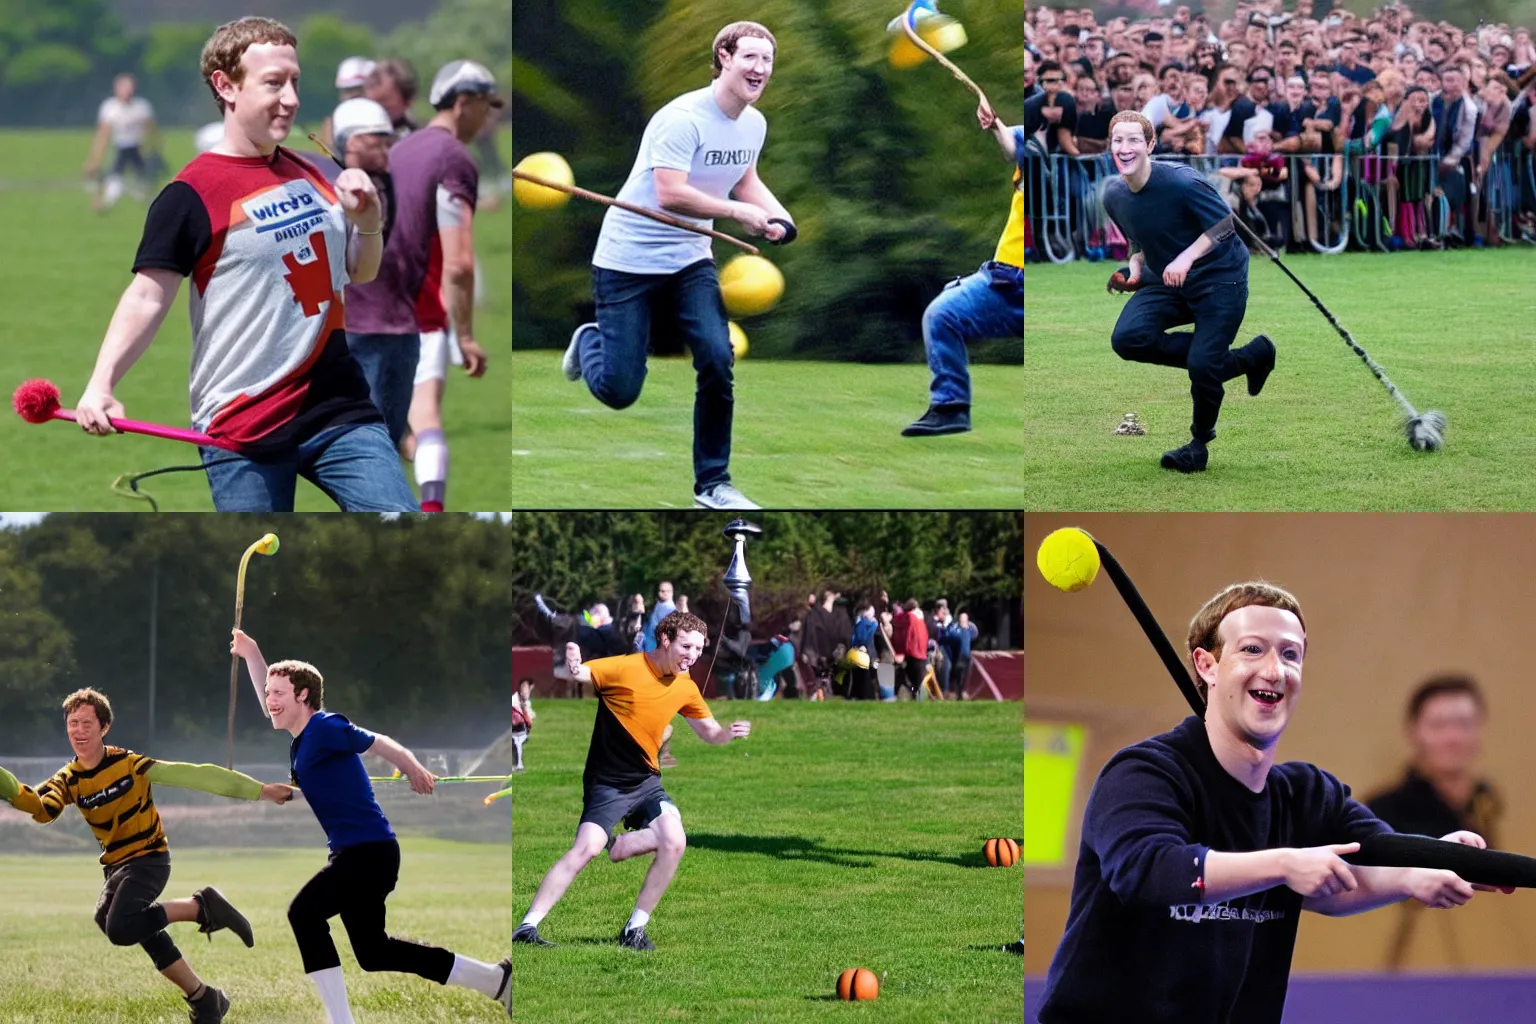 Prompt: Mark Zuckerberg playing Quidditch